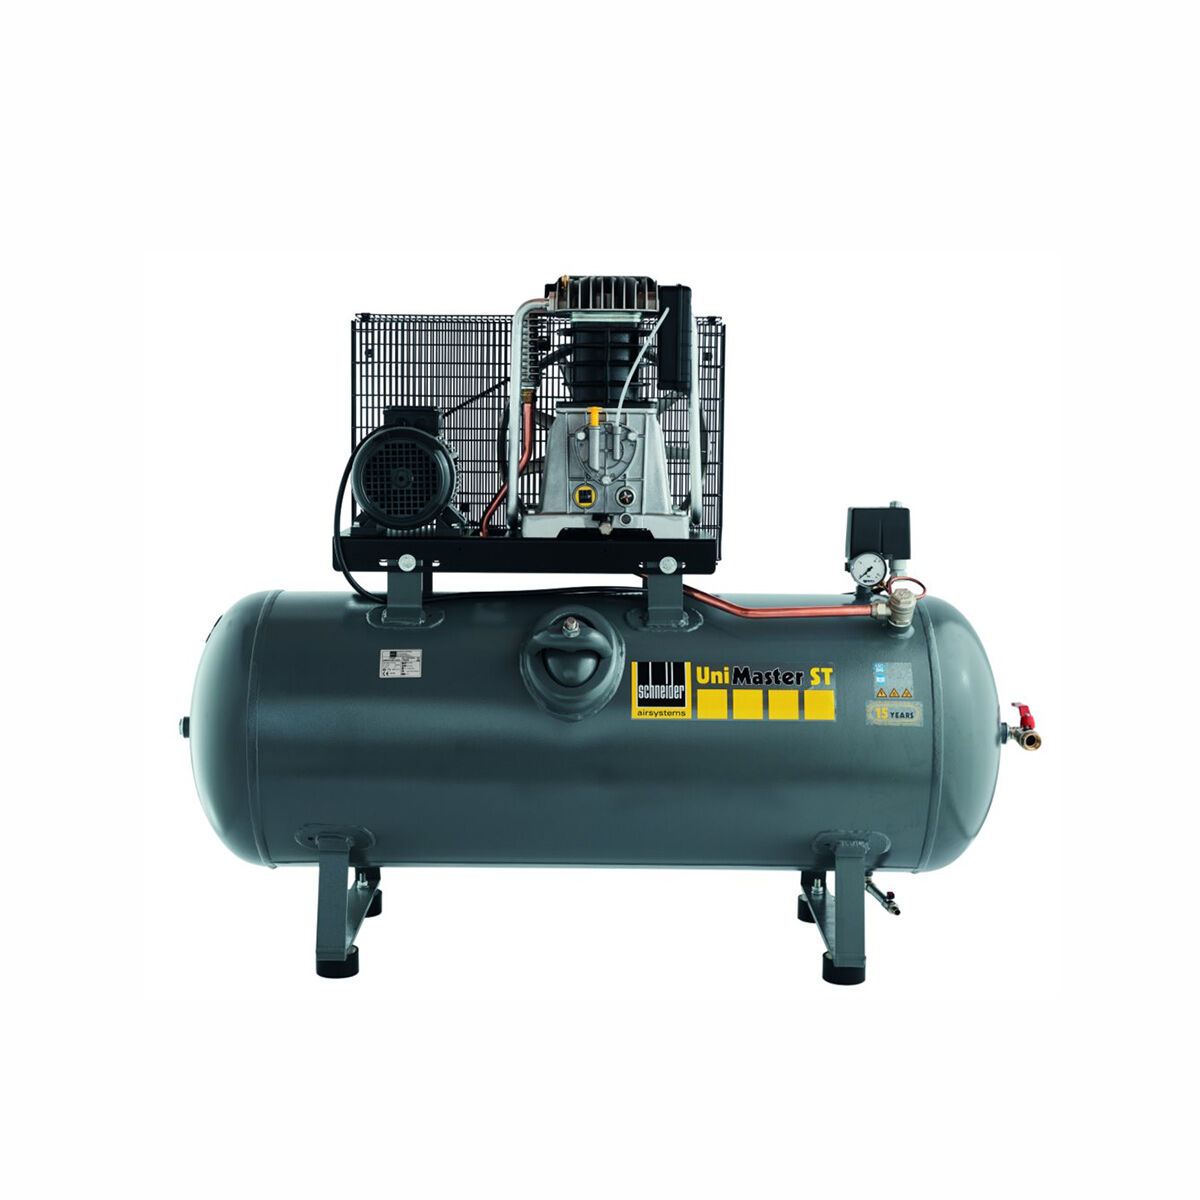 Schneider-Kompressor UNM STL 660-10-270 1121570208